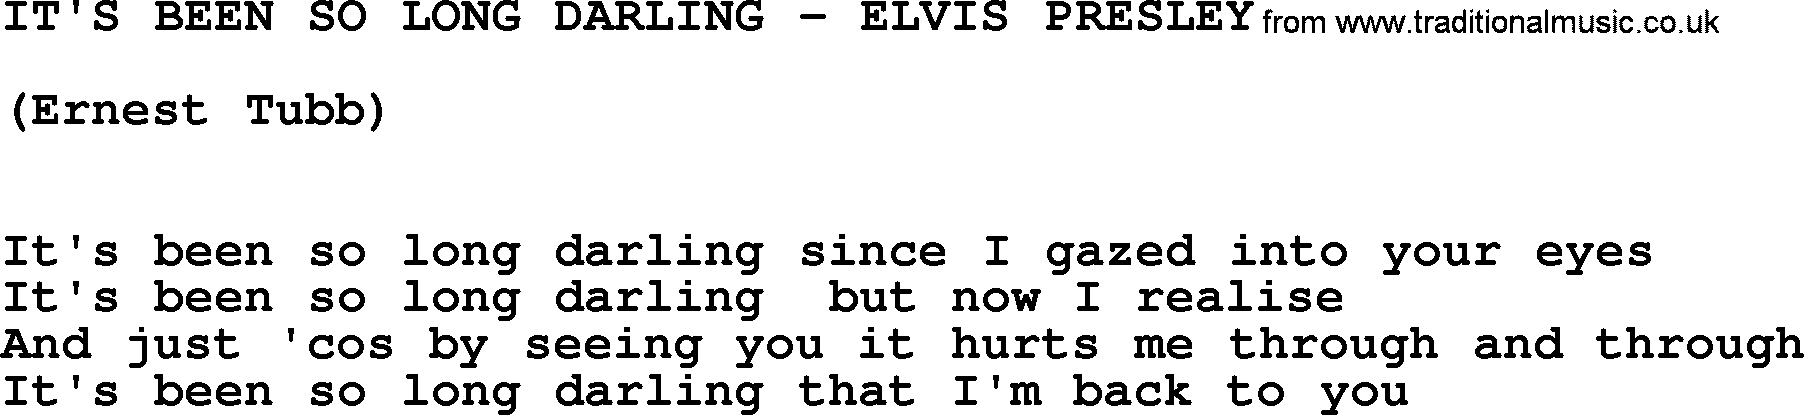 Elvis Presley song: It's Been So Long Darling-Elvis Presley-.txt lyrics and chords